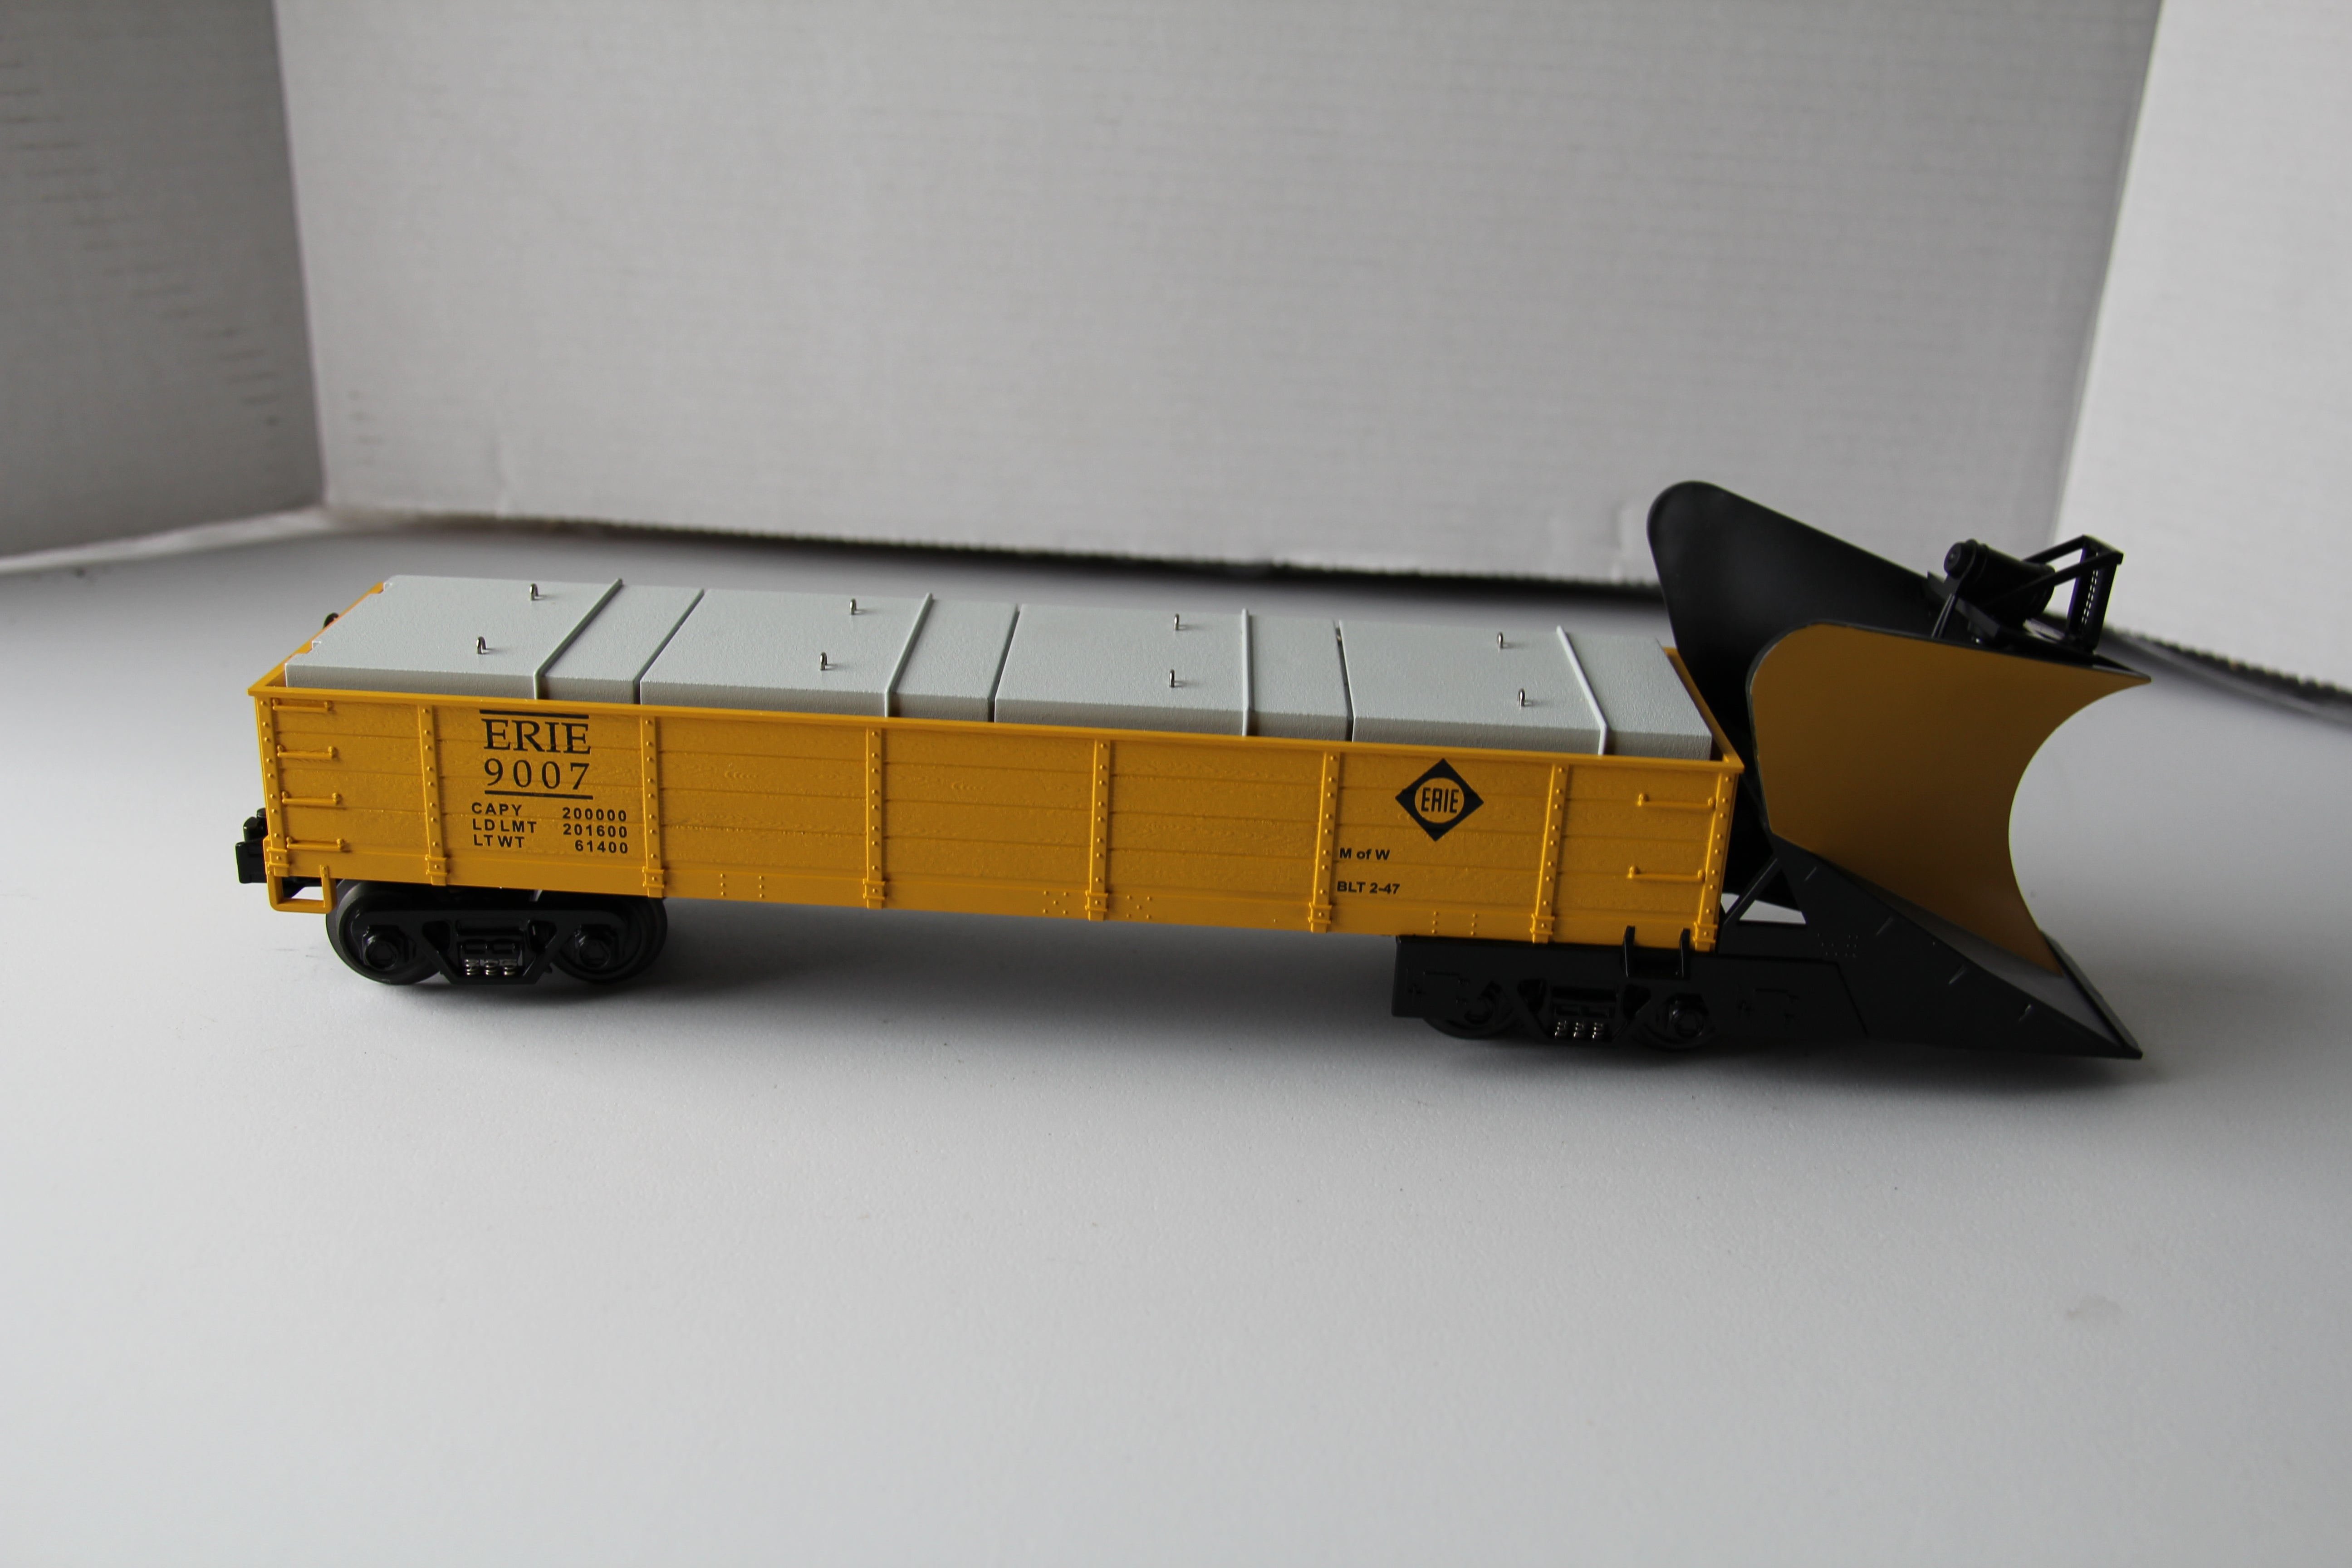 Rail King 30-79007 Erie Heavy Duty Snowplow-Second hand-M2489